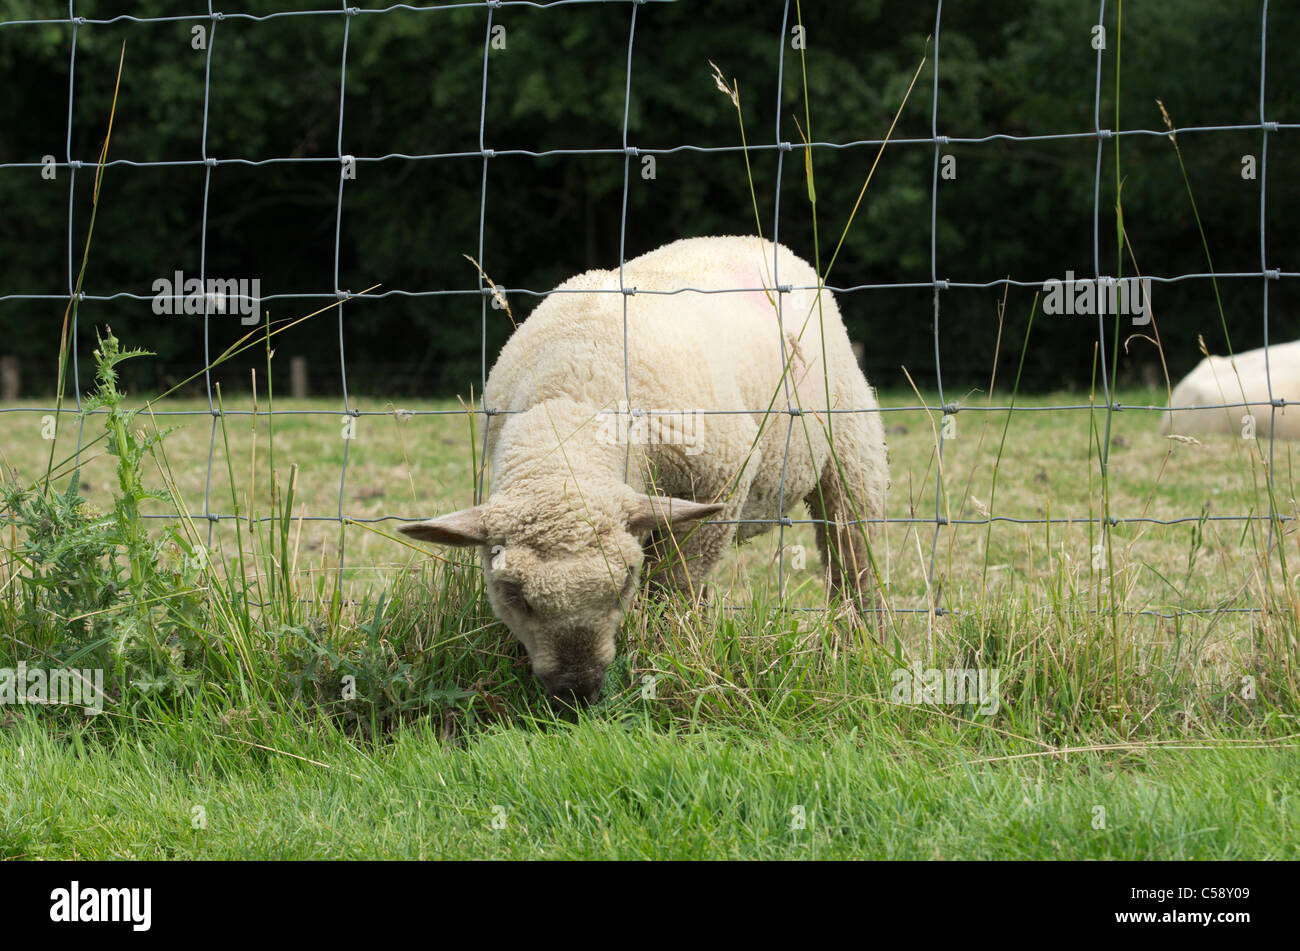 Un cordero comiendo hierba de alimentación a través de una valla de alambre Foto de stock